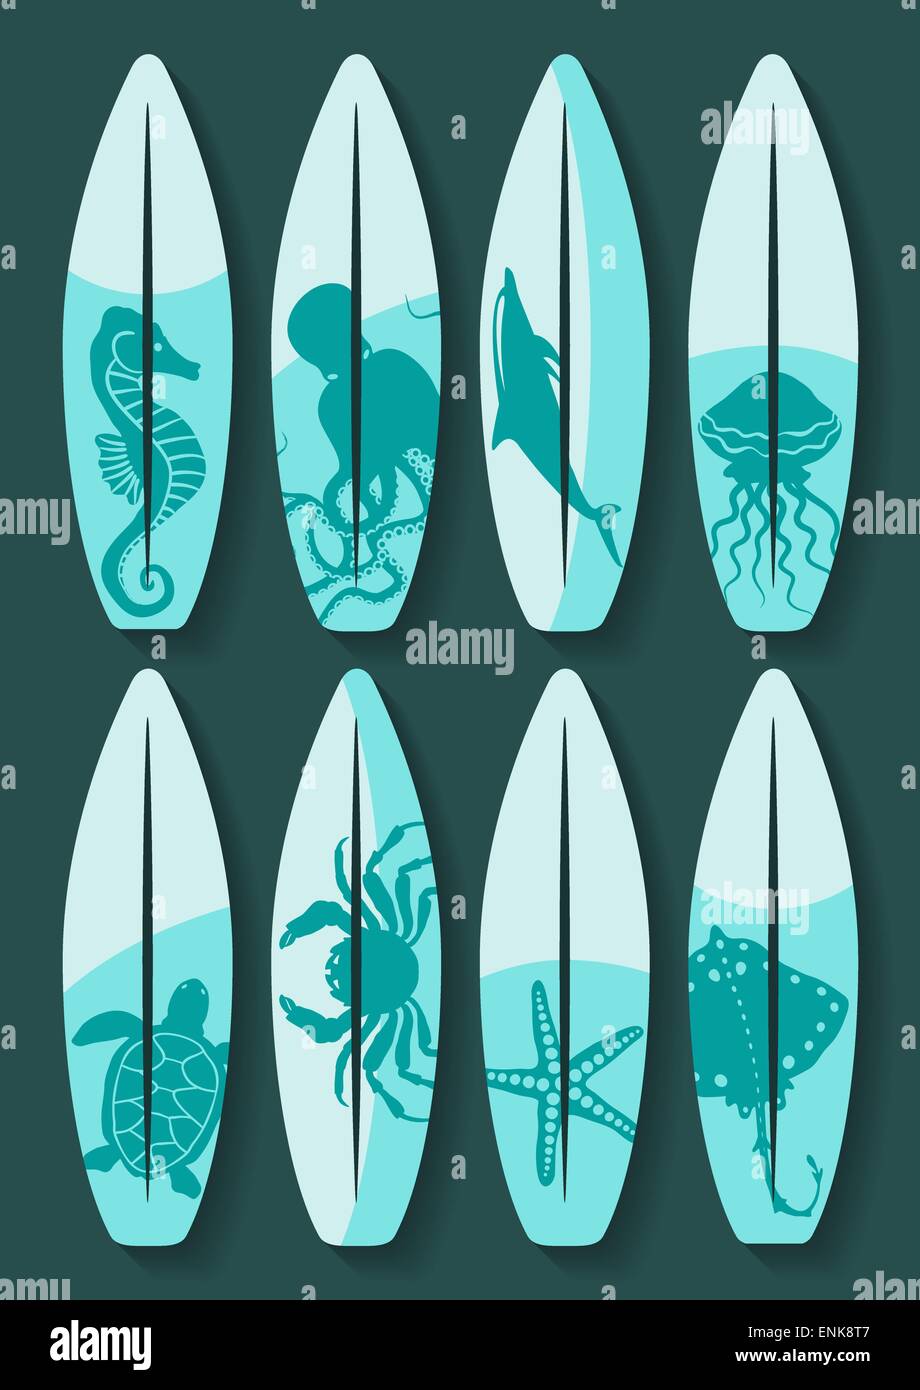 Las Tablas De Surf Con Criaturas Del Mar Azul Dibujo 8 Eps